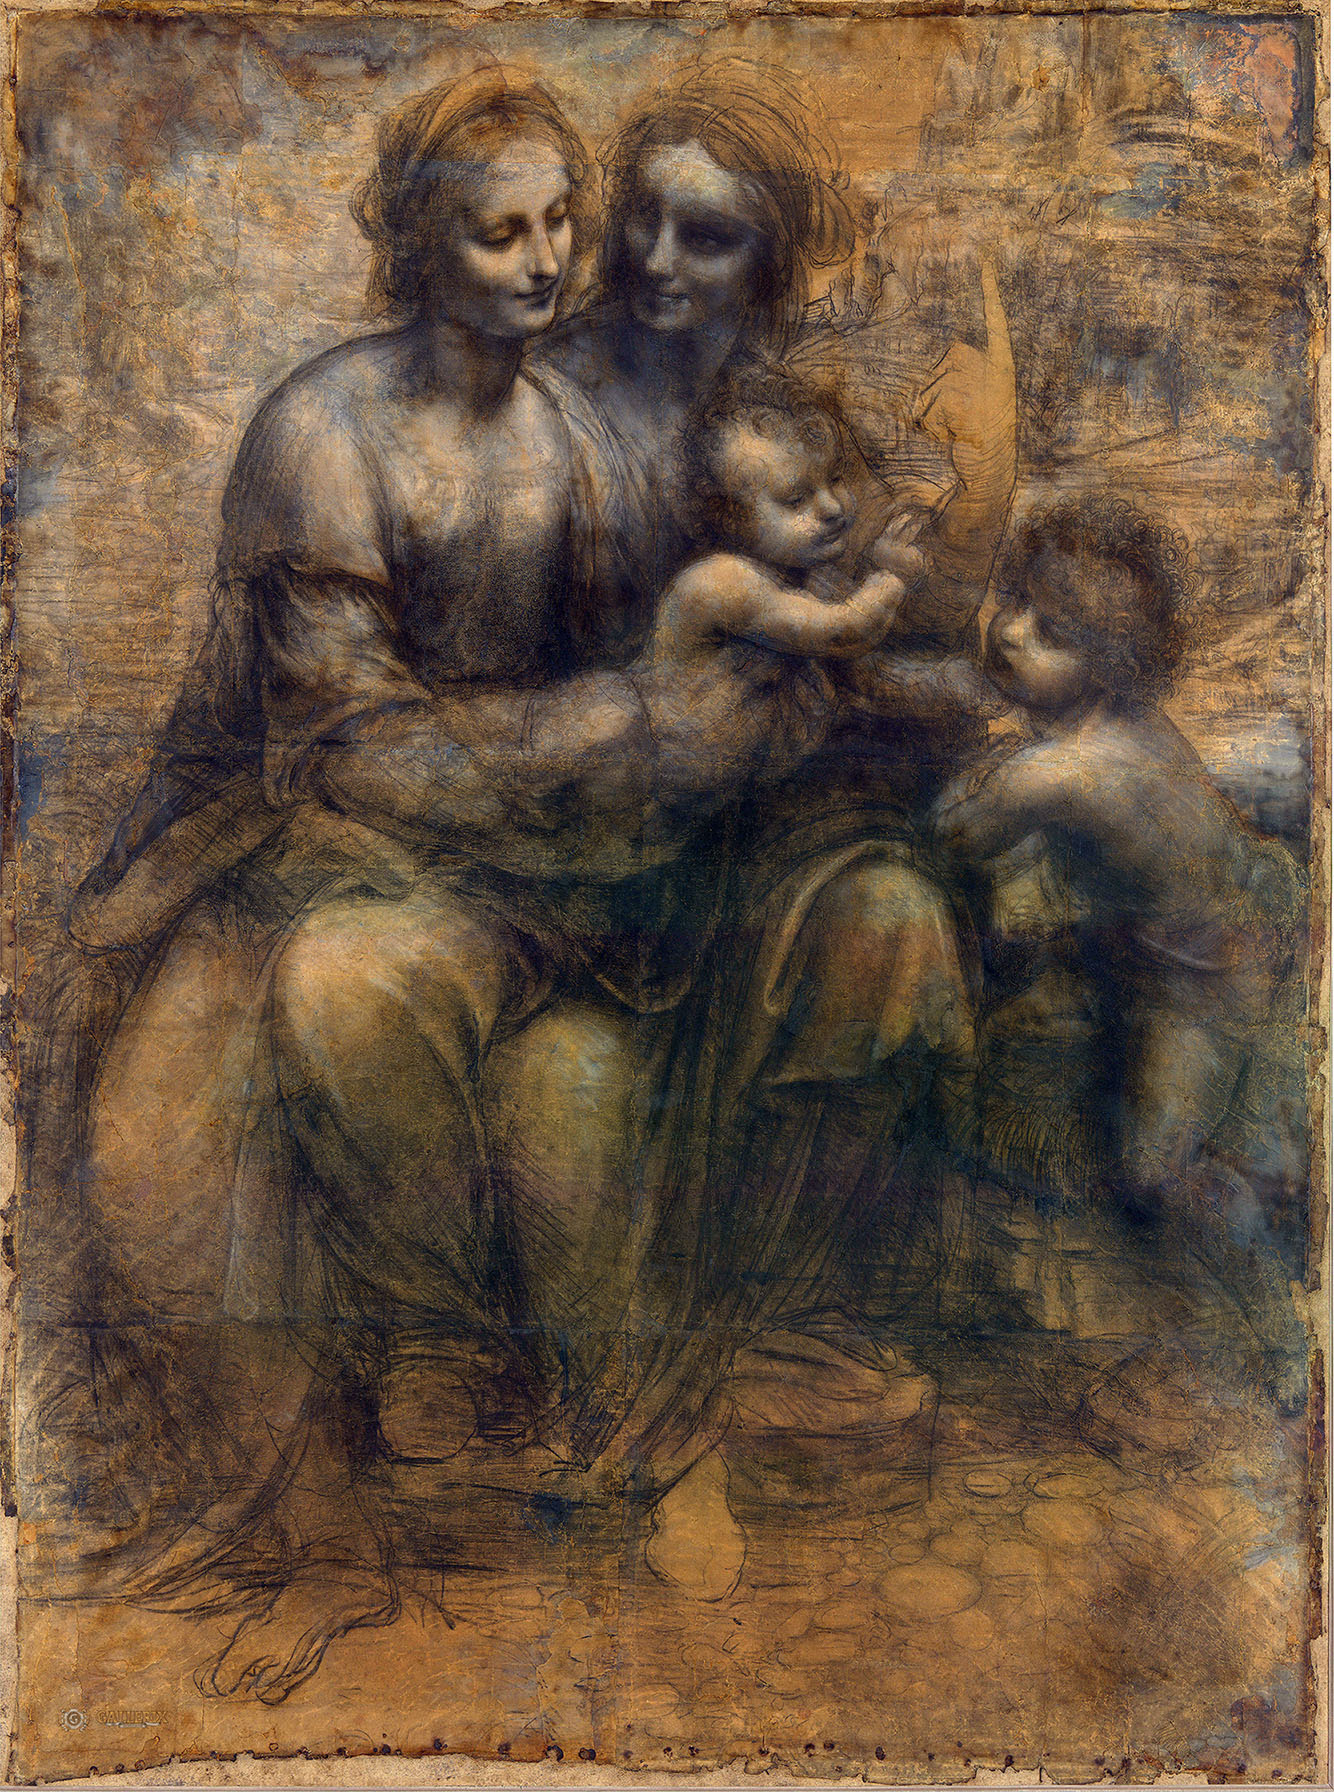 Леонардо да Винчи. "Мадонна с Младенцем со святой Анной и маленьким Иоанном Крестителем". 1499-1500. Нациоеальная галерея, Лондон.